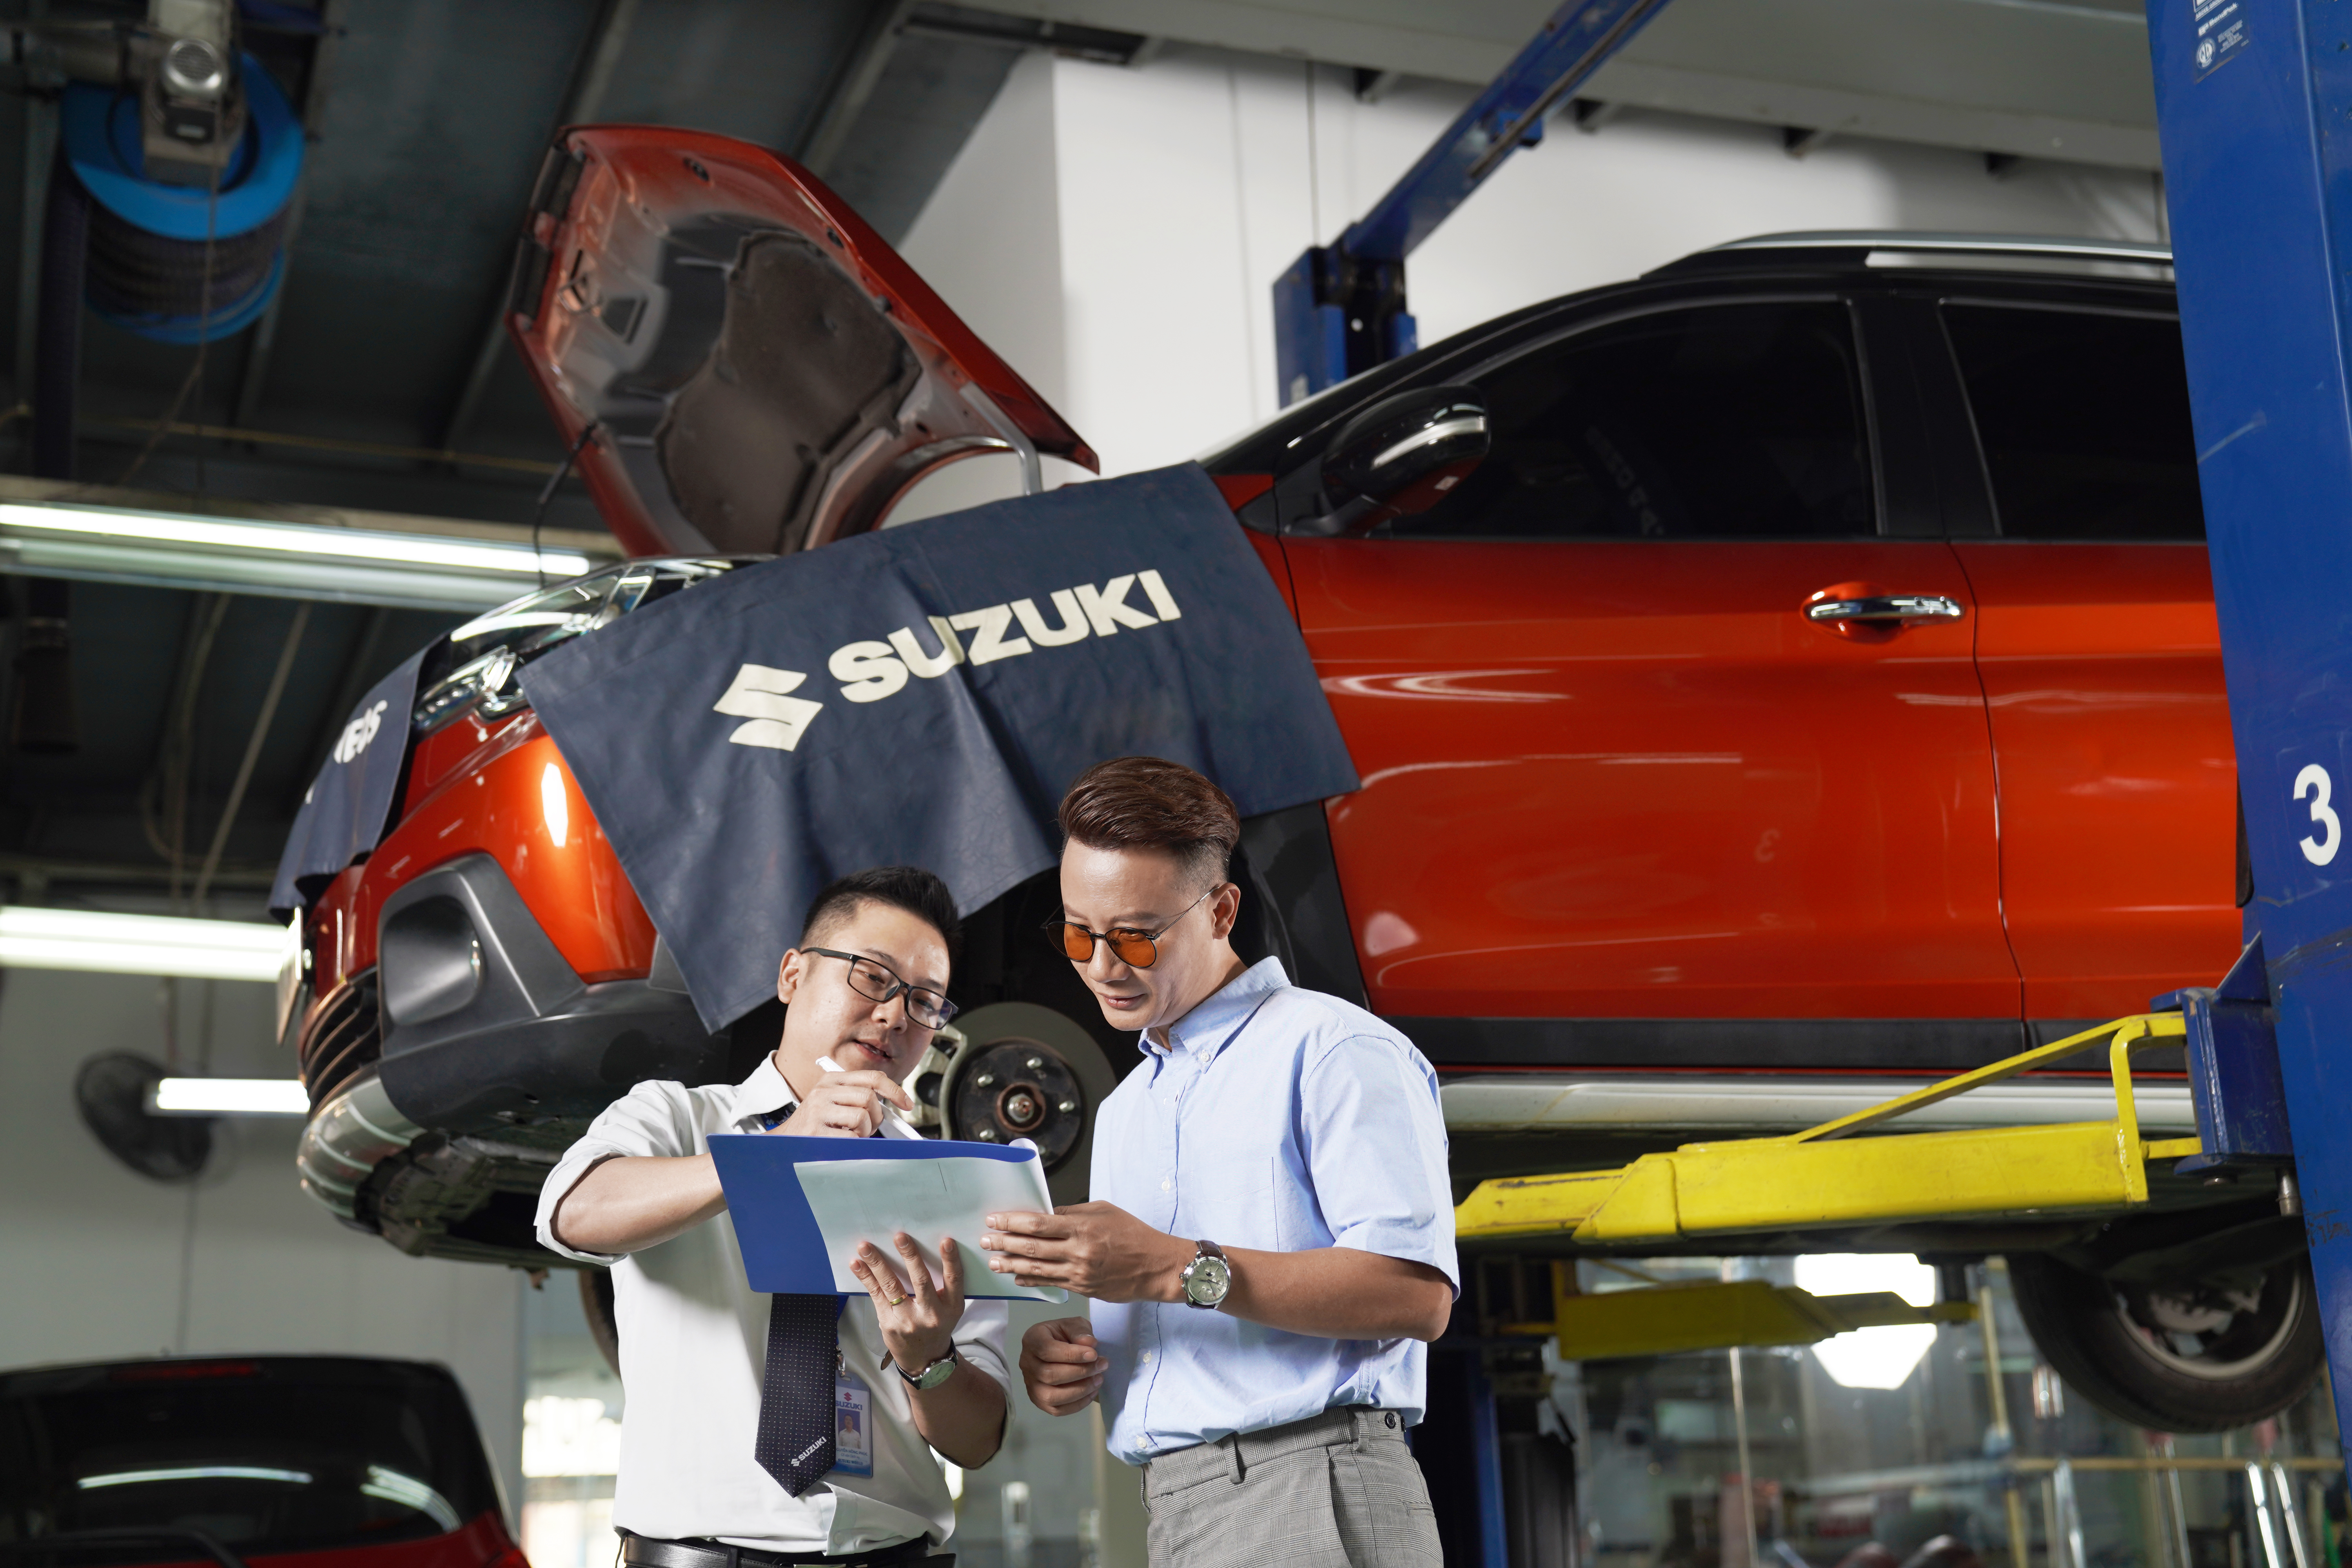 Lọt top 10 thương hiệu ô tô người Việt ưa chuộng nhất 2020, Suzuki ưu đãi lớn khách hàng 9-suzuki-chu-trong-cai-thien-dich-vu-hau-mai-dang-ke-mang-den-nhieu-loi-ich-thiet-thuc-cho-khach-hang.jpg